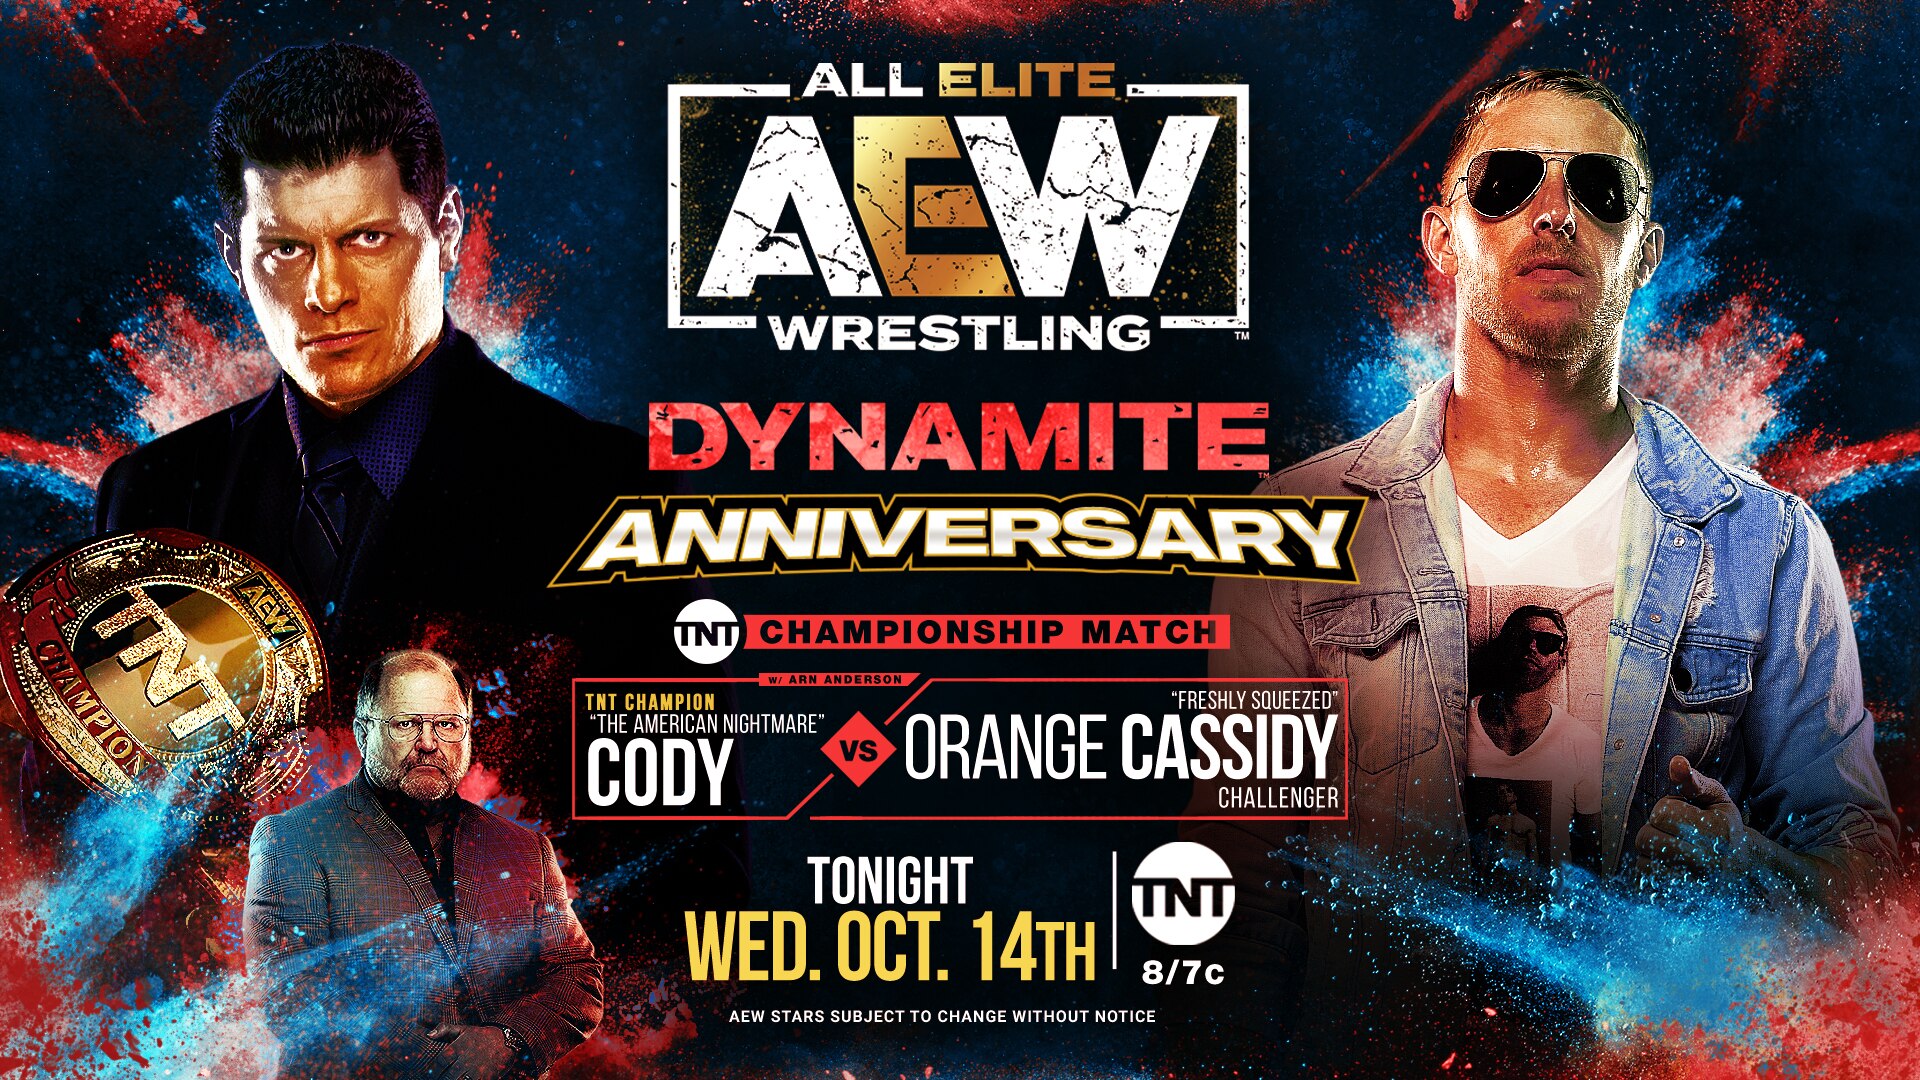 Cody vs Orange Cassidy